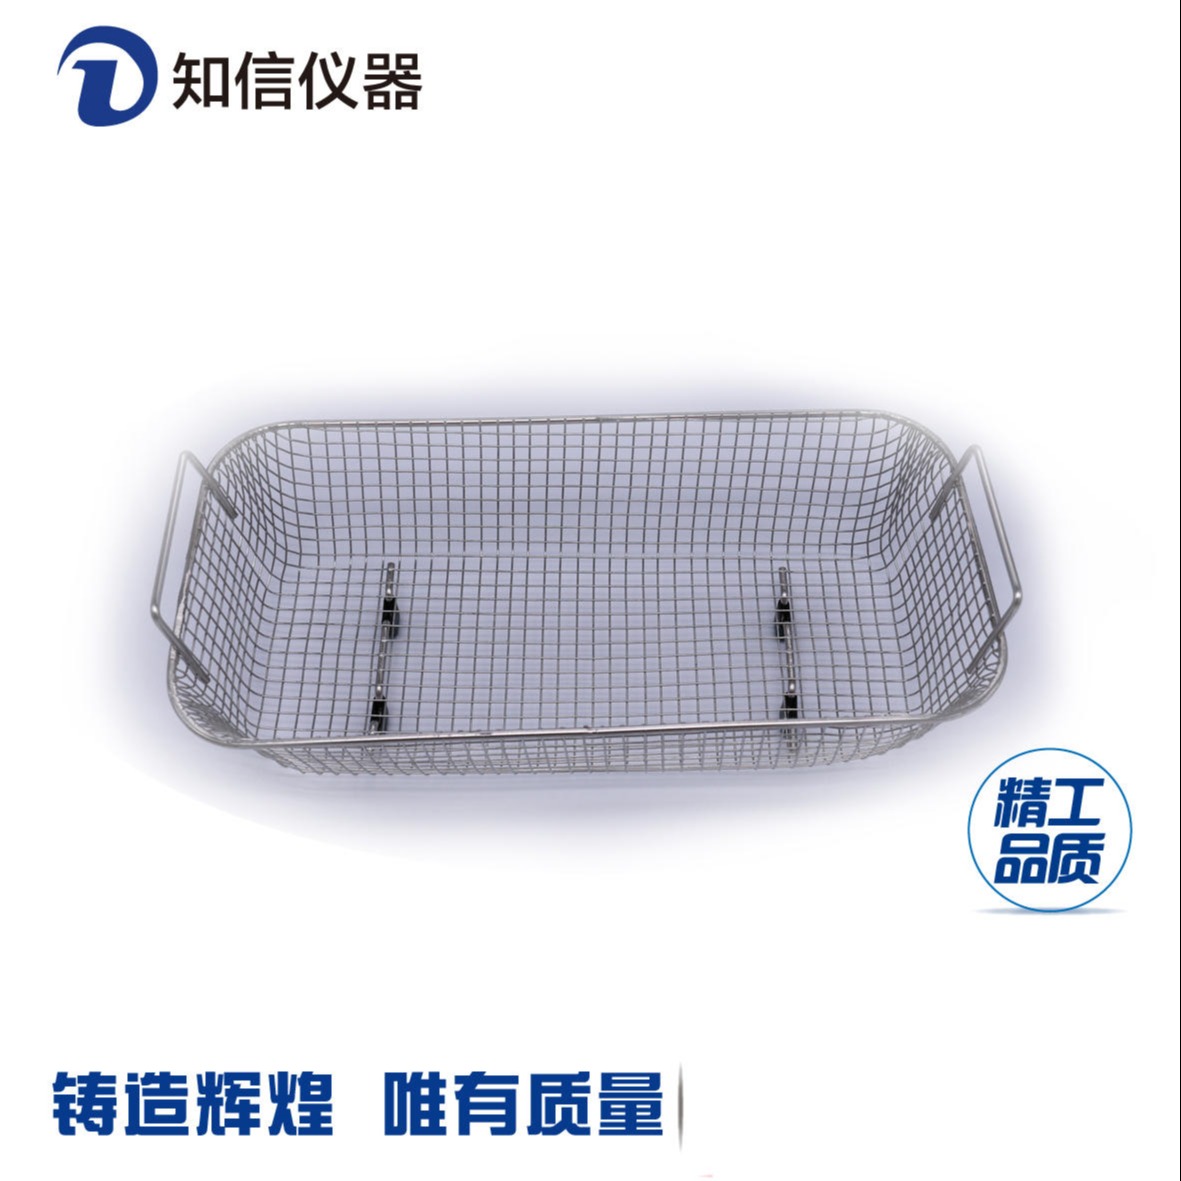 实验室超声波清洗器 超声波清洗机上海知信 ZX-3200DE单频6.8L1